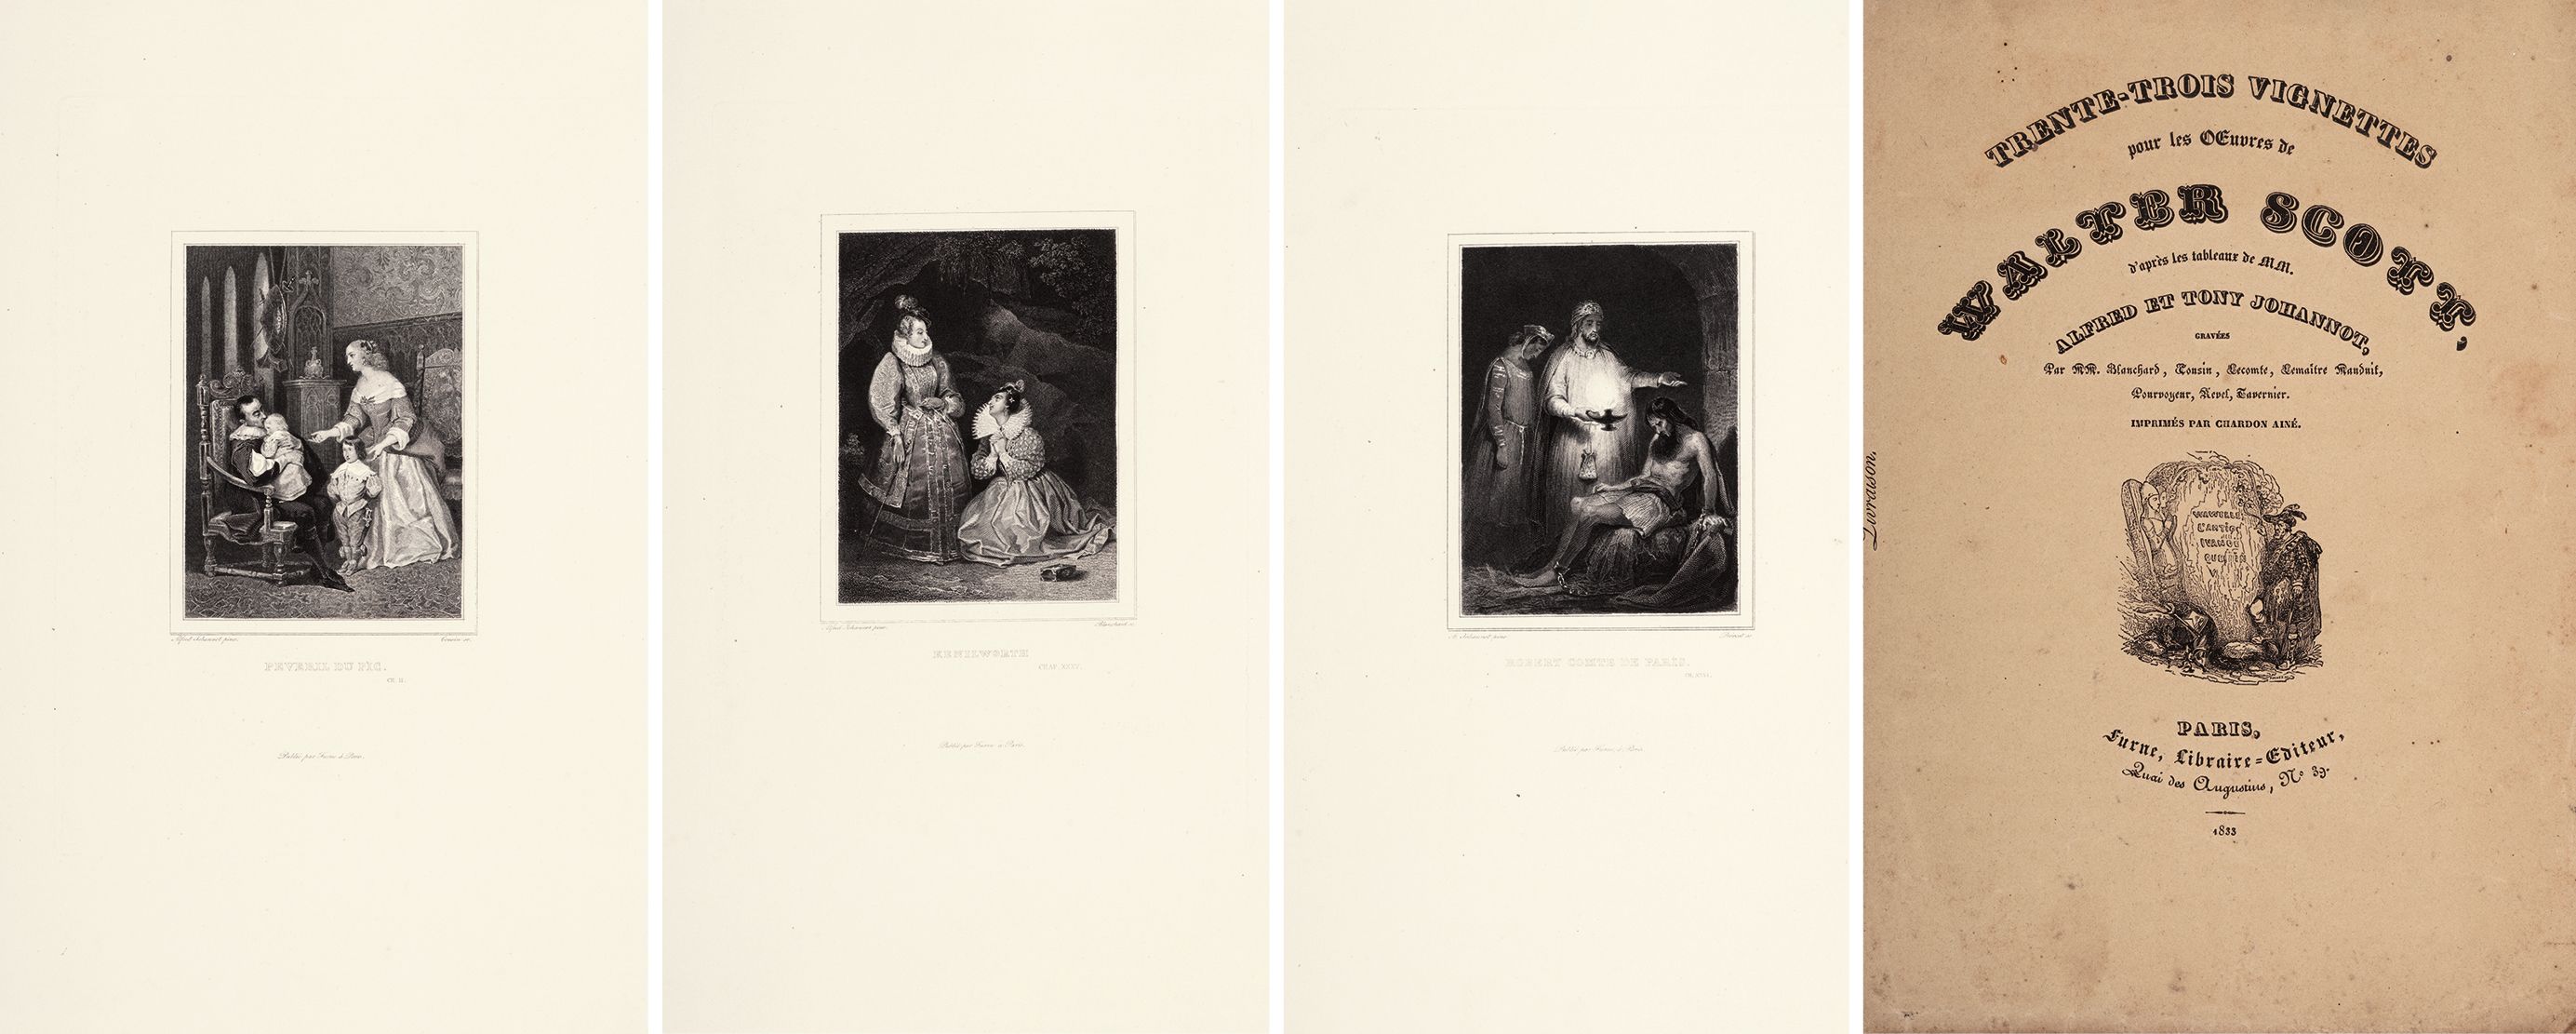 沃尔特·司各特版画集 1833年巴黎 Furne 出版